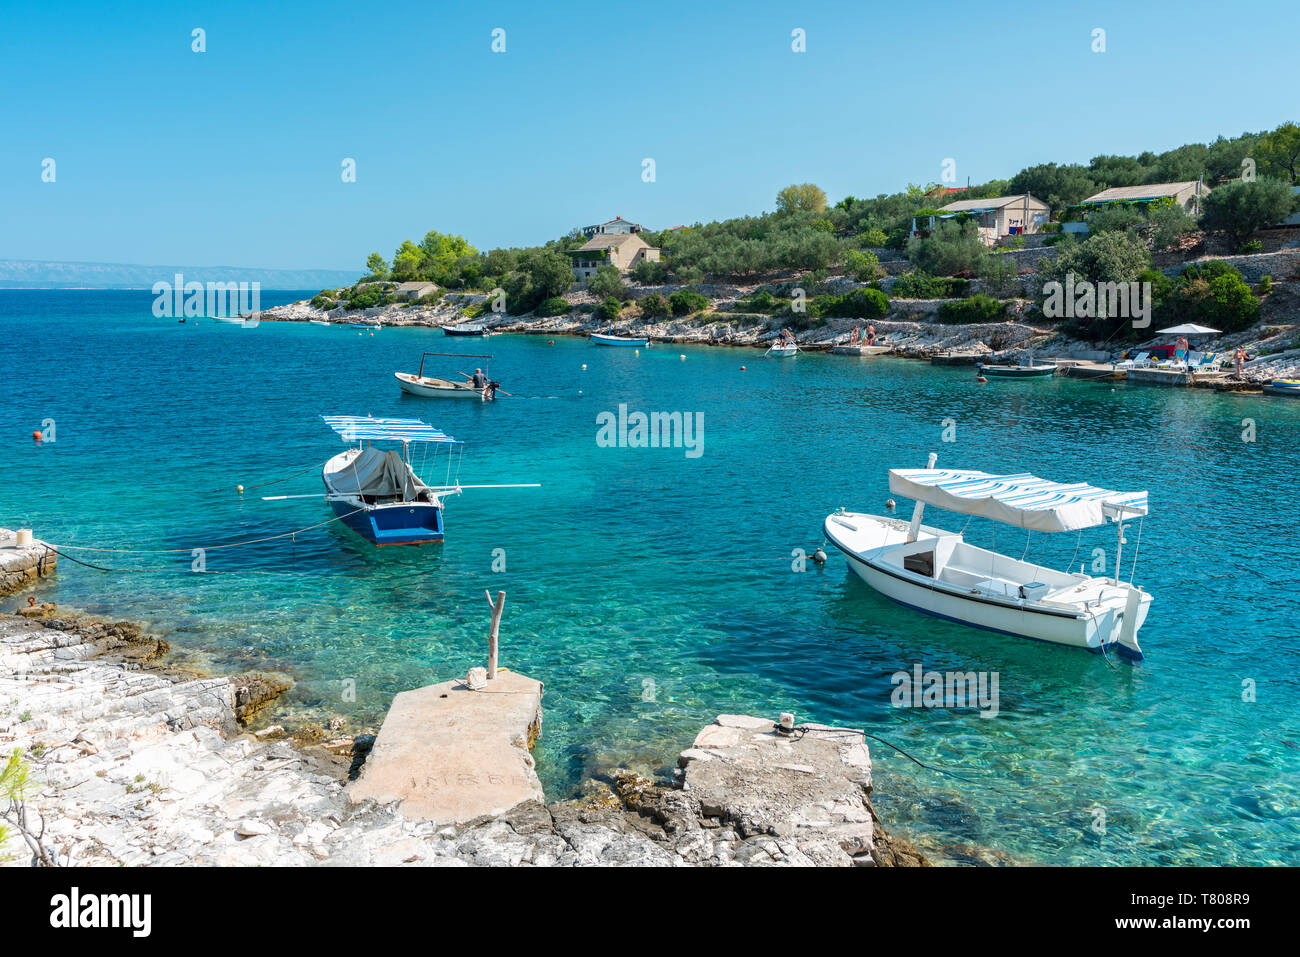 Los barcos en El pequeño embarcadero de Tankaraca Cove, en verano, Vela Luka, la isla de Korcula, condado de Dubrovnik-Neretva, en Croacia, Europa Foto de stock